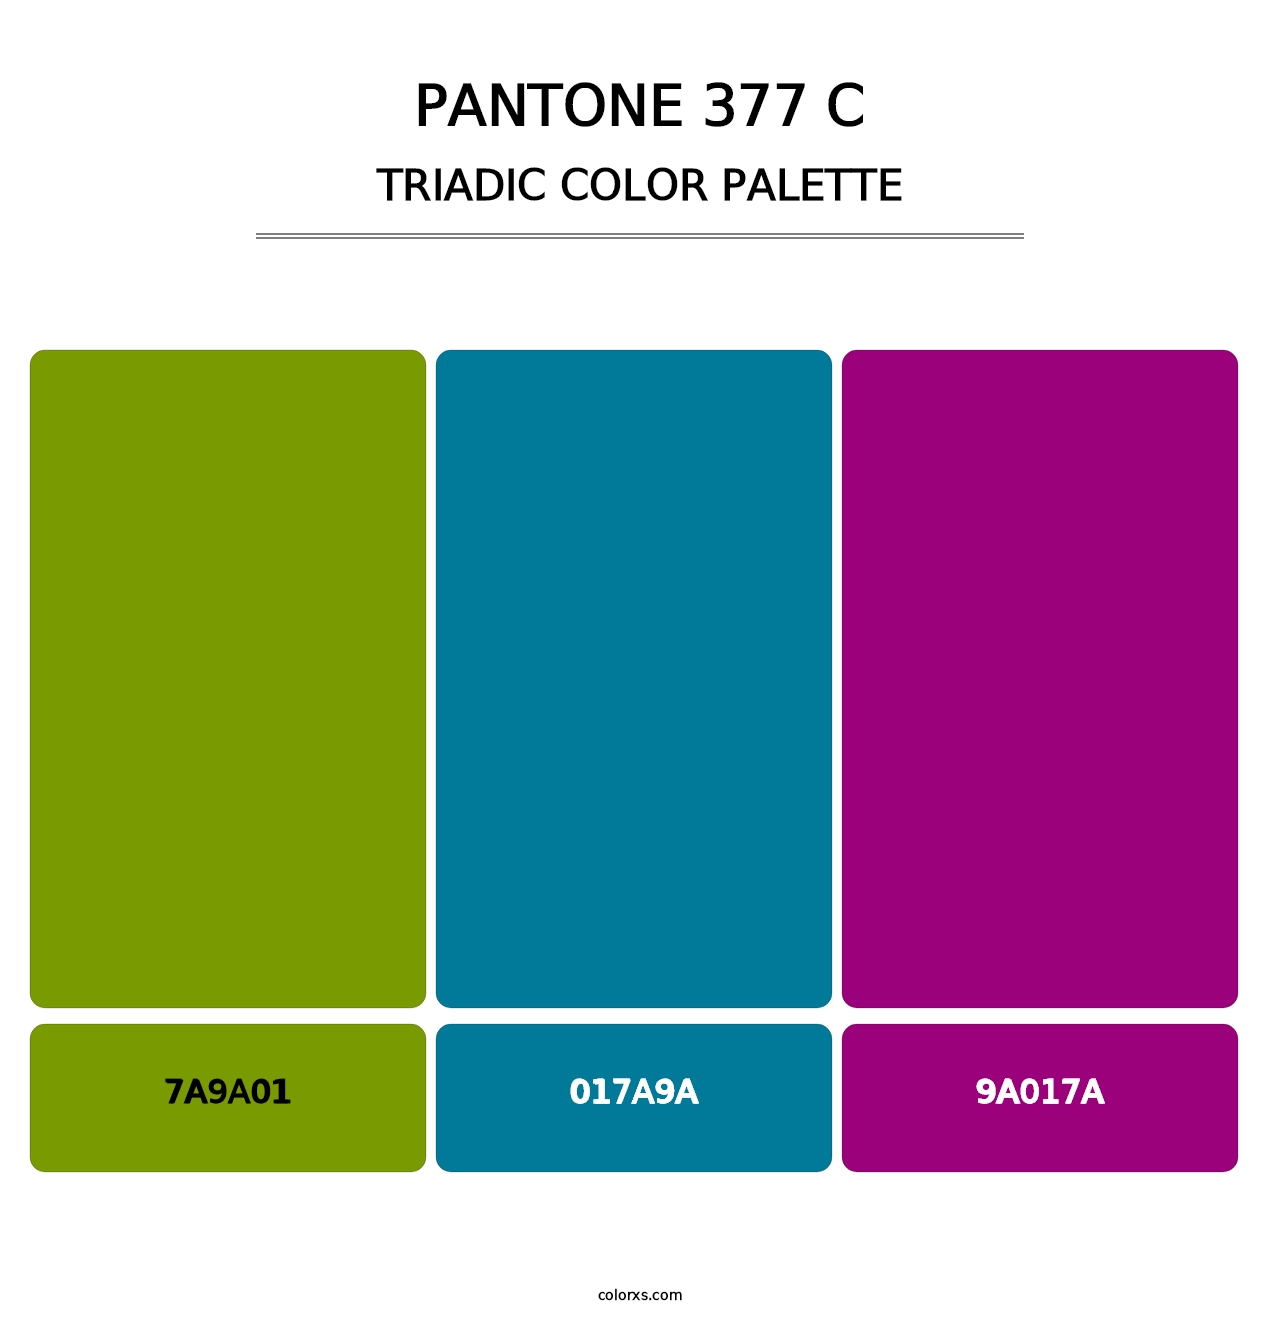 PANTONE 377 C - Triadic Color Palette